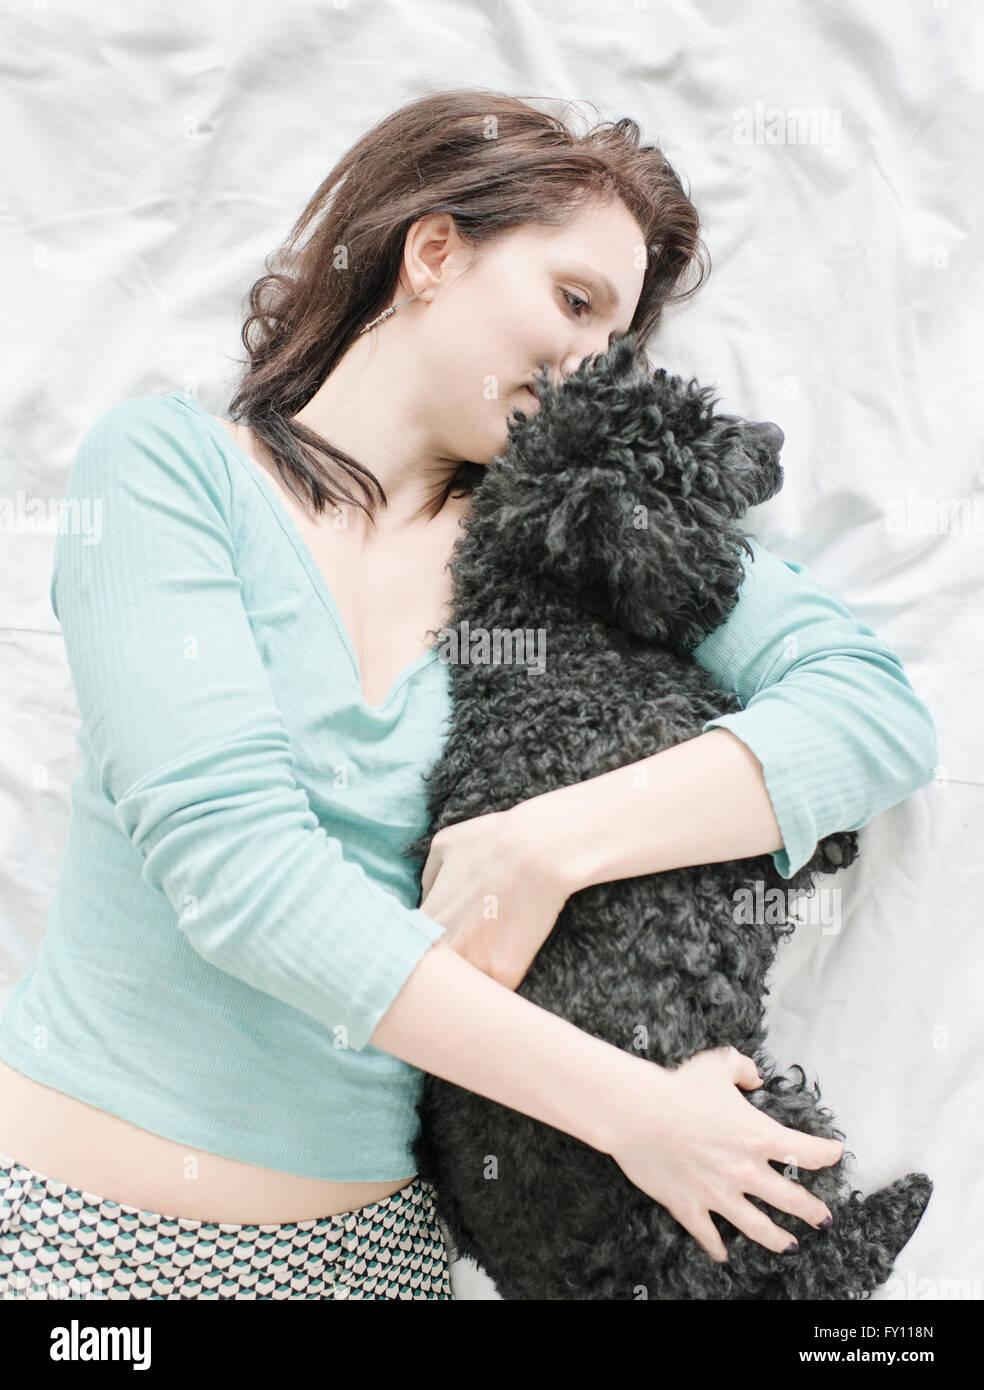 Donna giaceva a letto avvolgente barboncino nero. Immagine di uno stile di vita che mostra affetto e il legame tra cane e uomo. Foto Stock